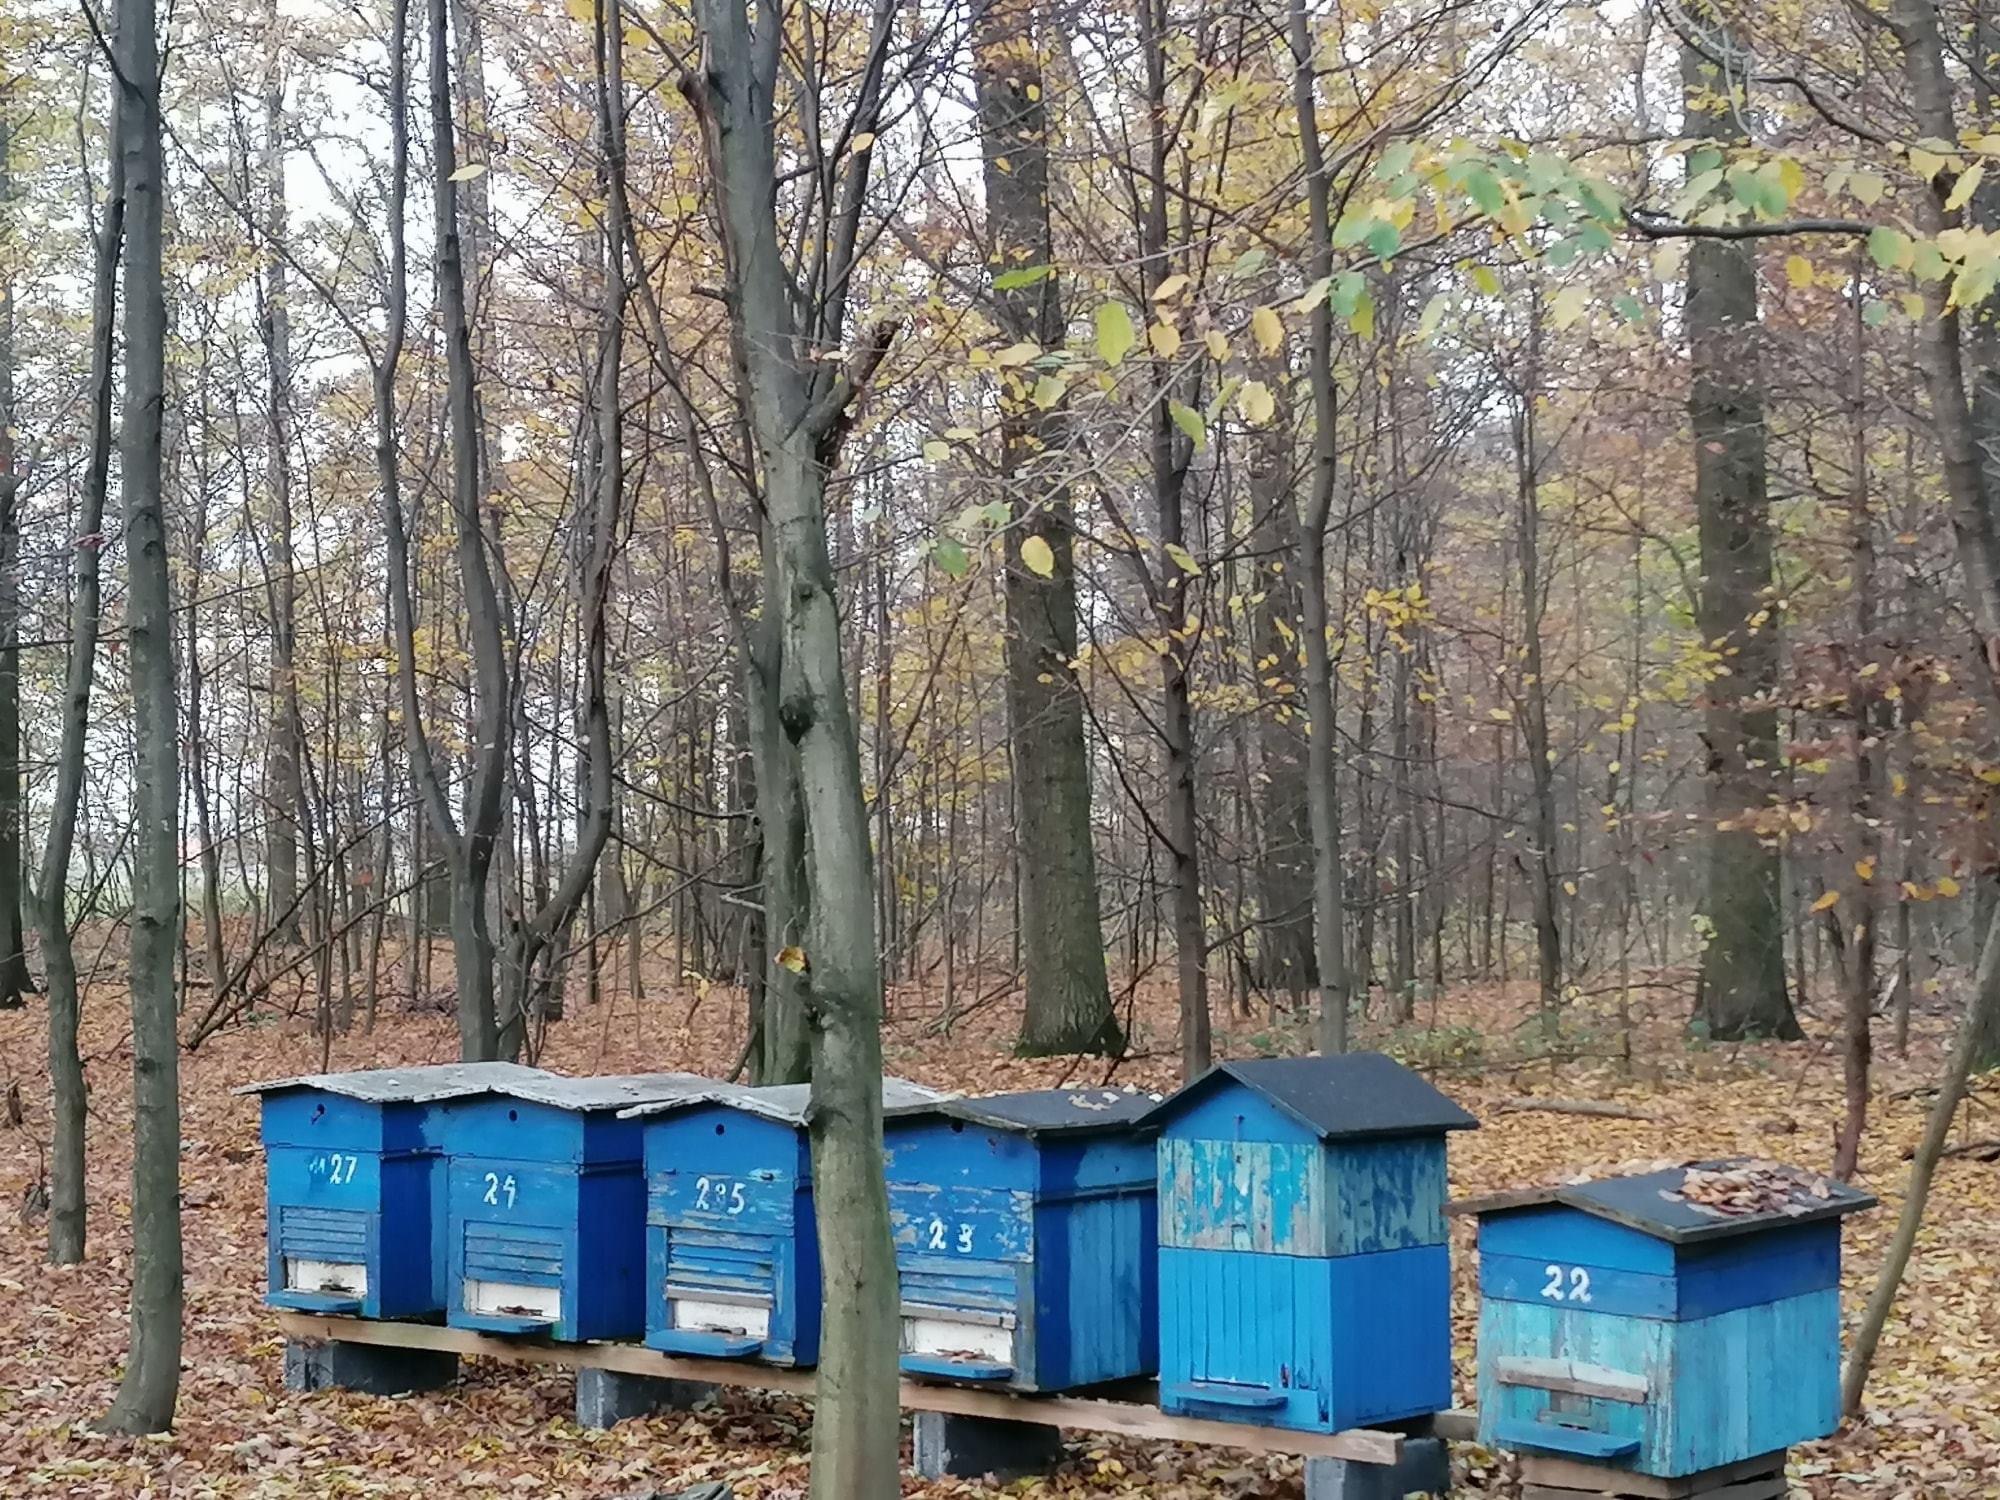 Fot. J. Oleszyńska - Niżniowska. Zdjęcie przestawia niebieskie ule ustawione na tle jesiennego lasu.